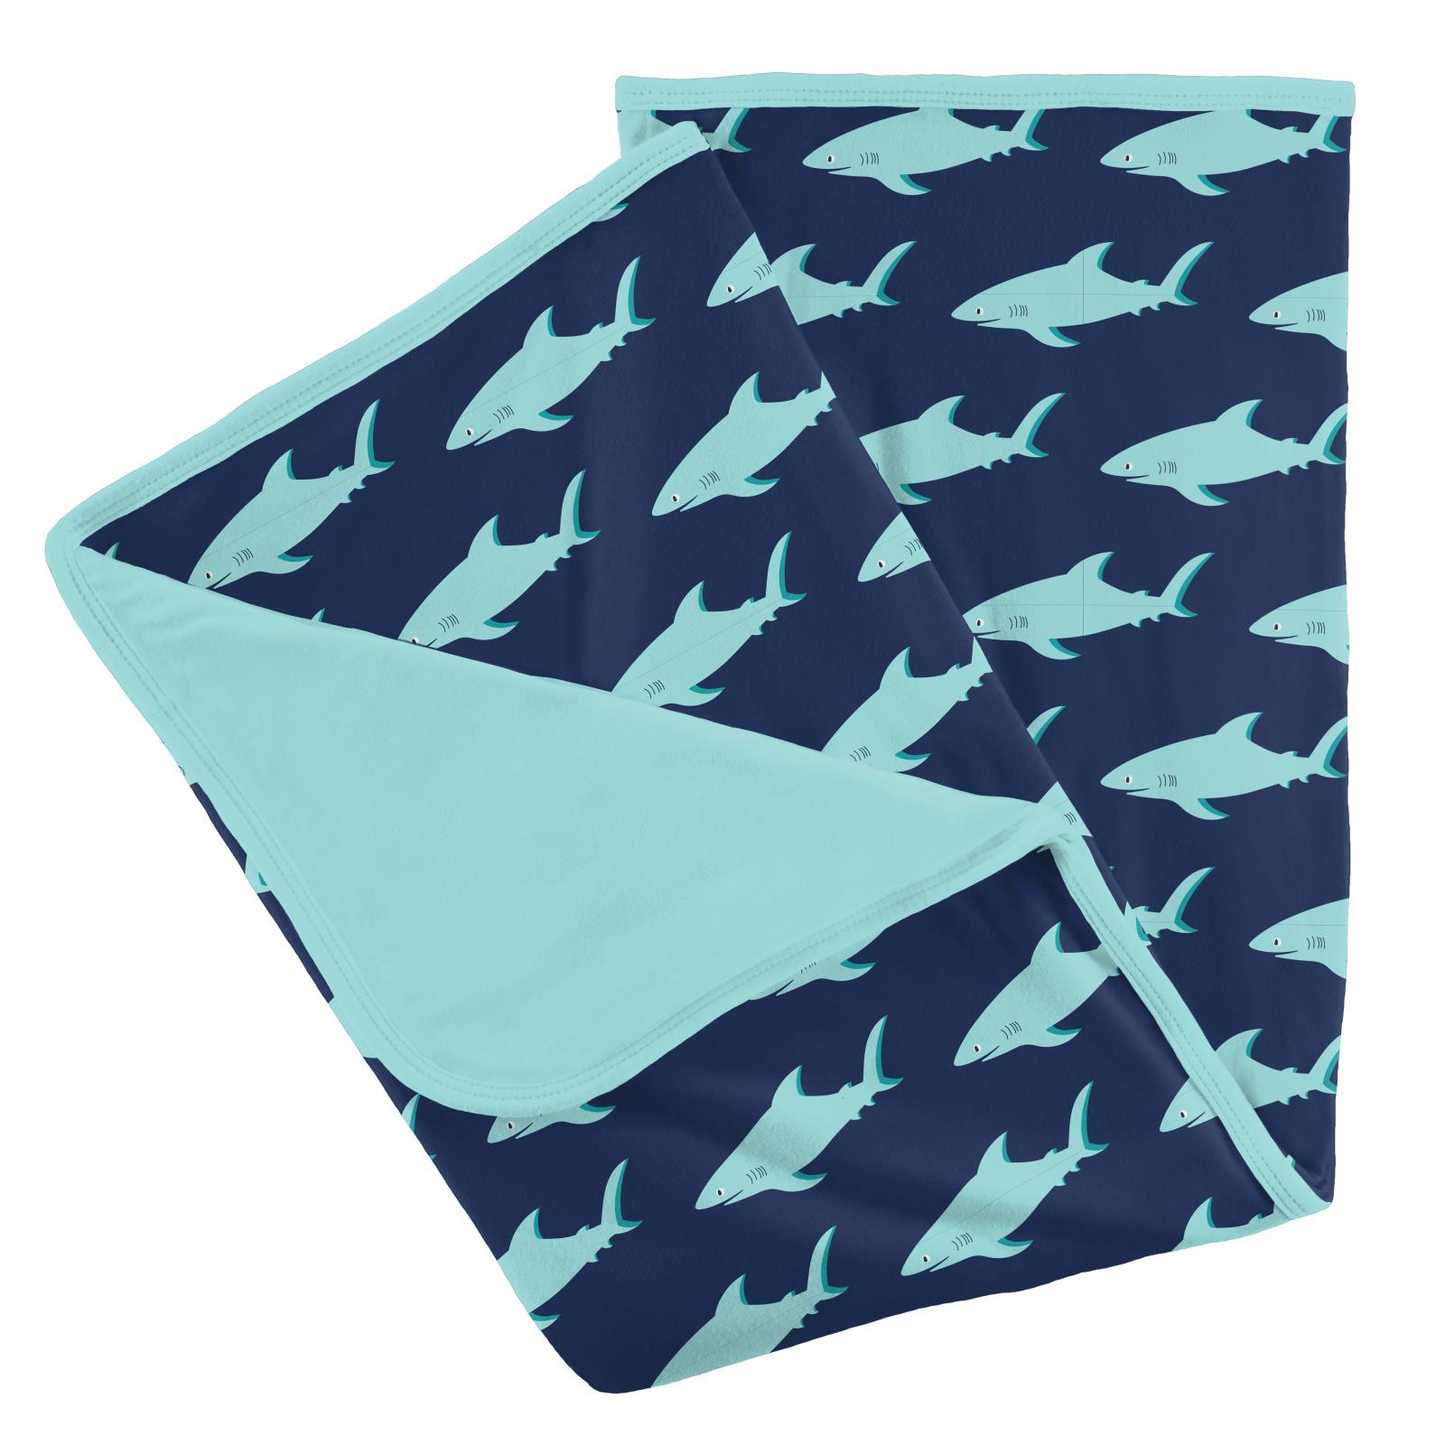 Print Stroller Blanket in Flag Blue Sharky